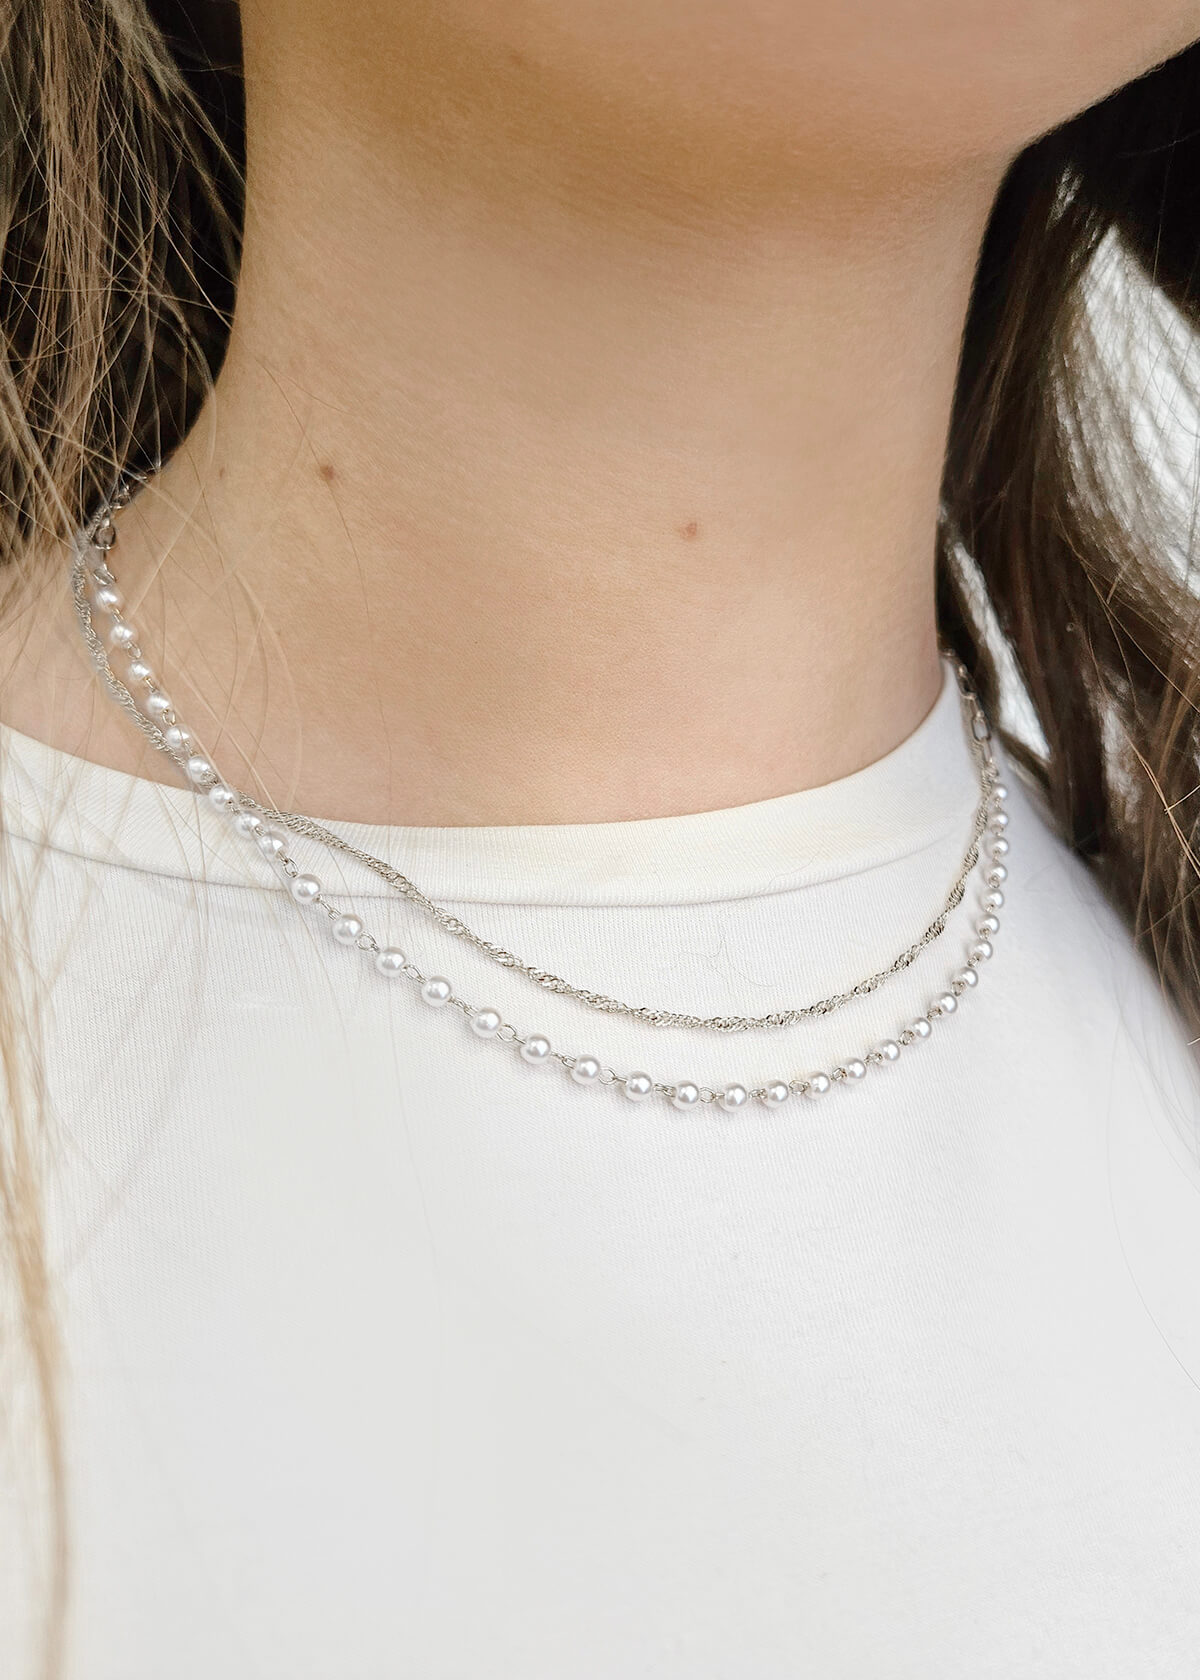 Chaînes individuelles avec mini perles - 1520 - 